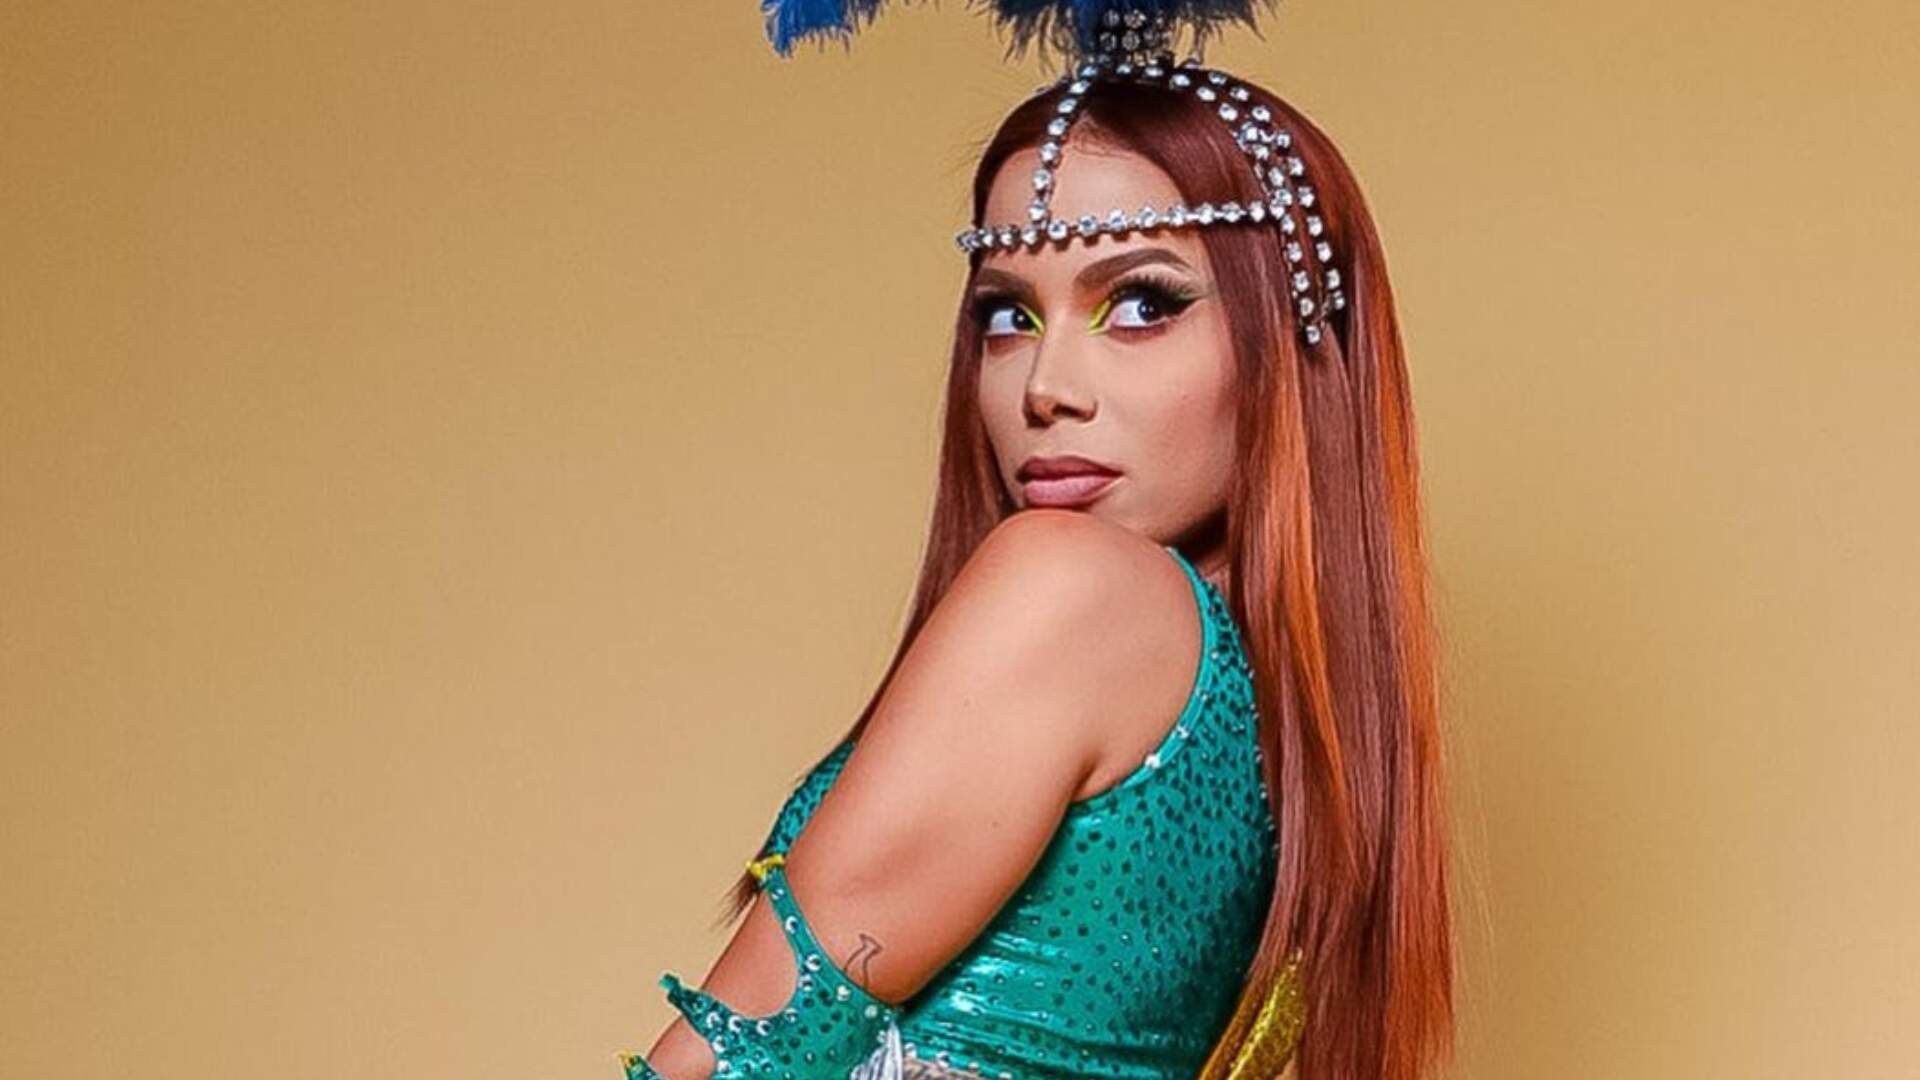 Anitta impressiona com tamanho do bumbum engolindo a fantasia de Carnaval: “Pequena demais”